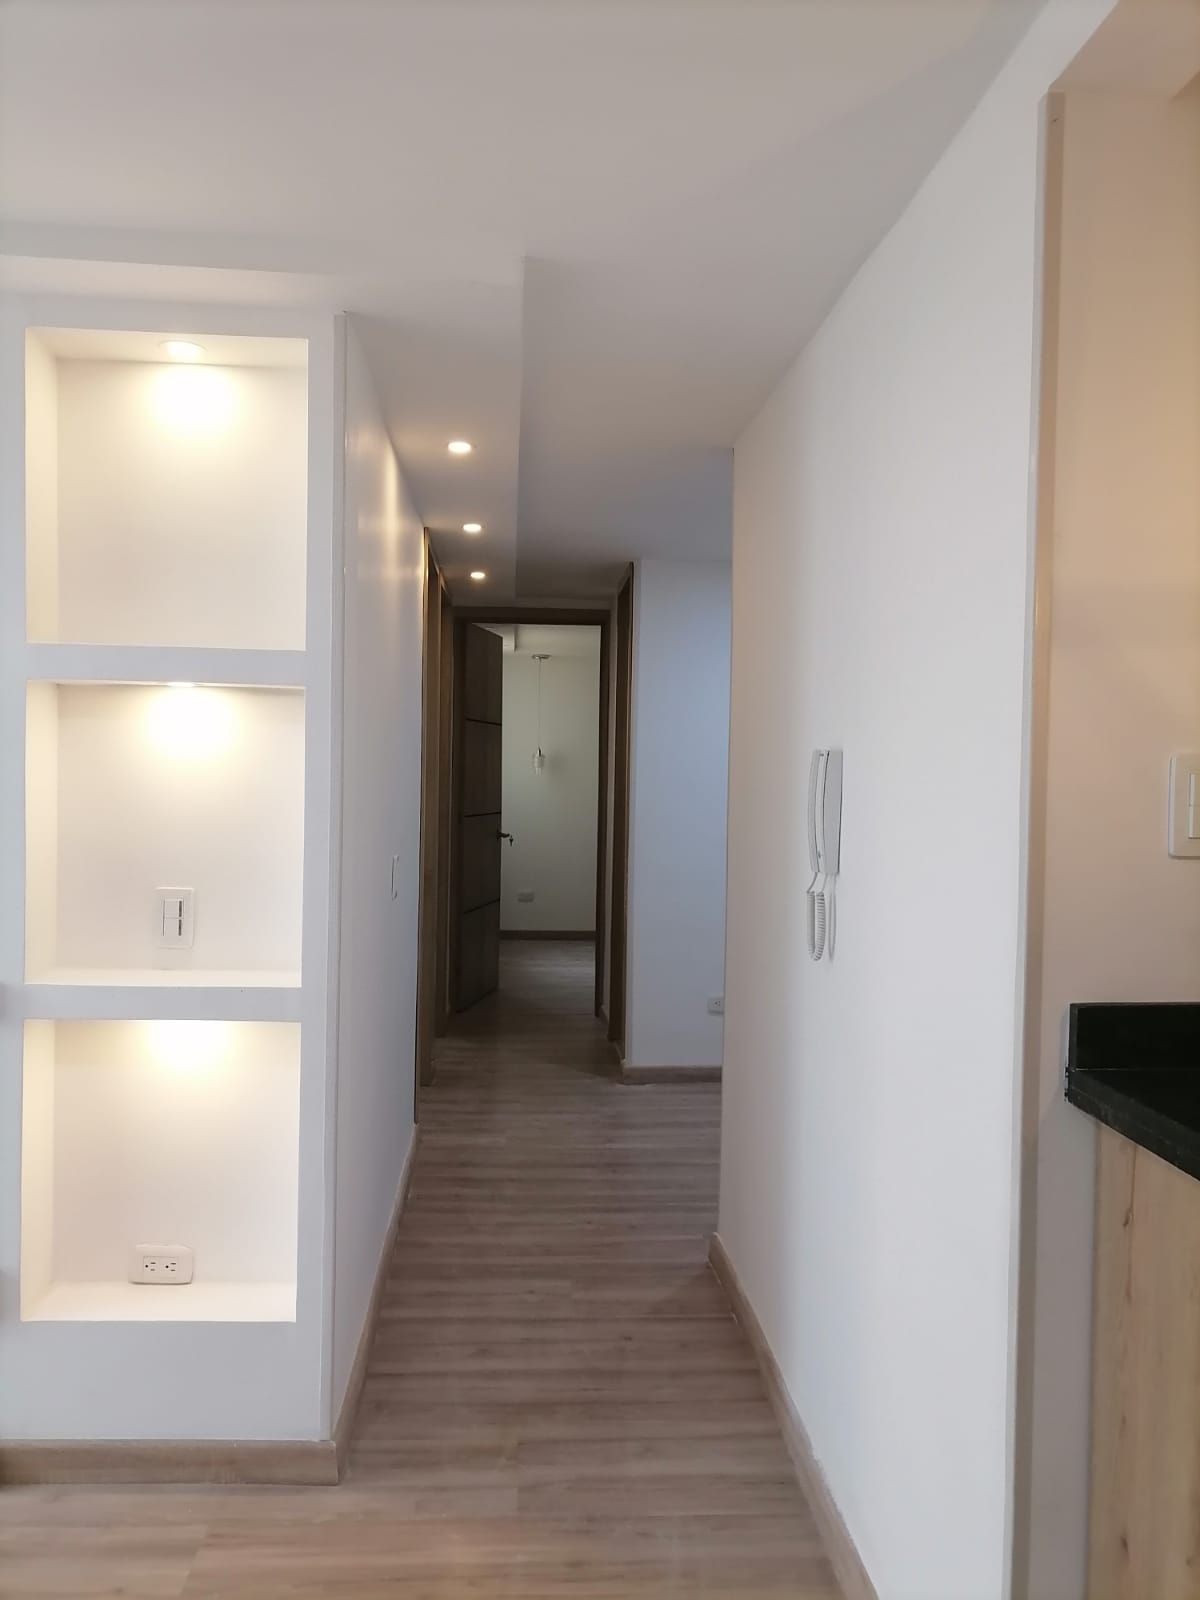 Apartamento en arriendo Madrid 63 m² - $ 950.000,00